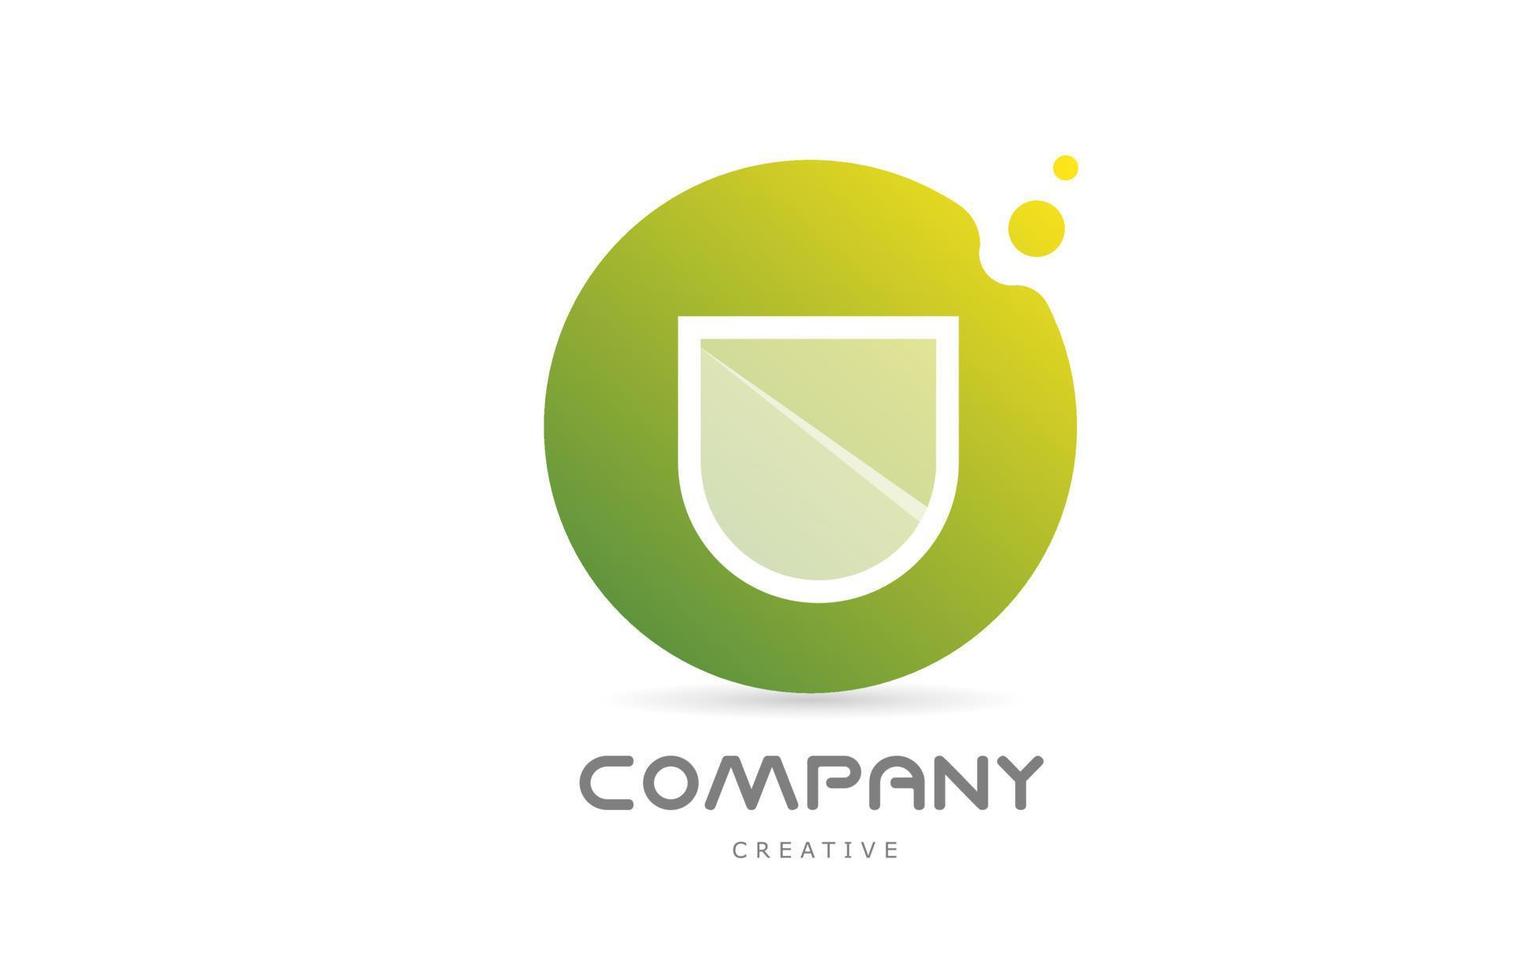 puntos verdes u icono del logotipo de la letra del alfabeto con transparencia blanca. plantilla creativa para negocios vector